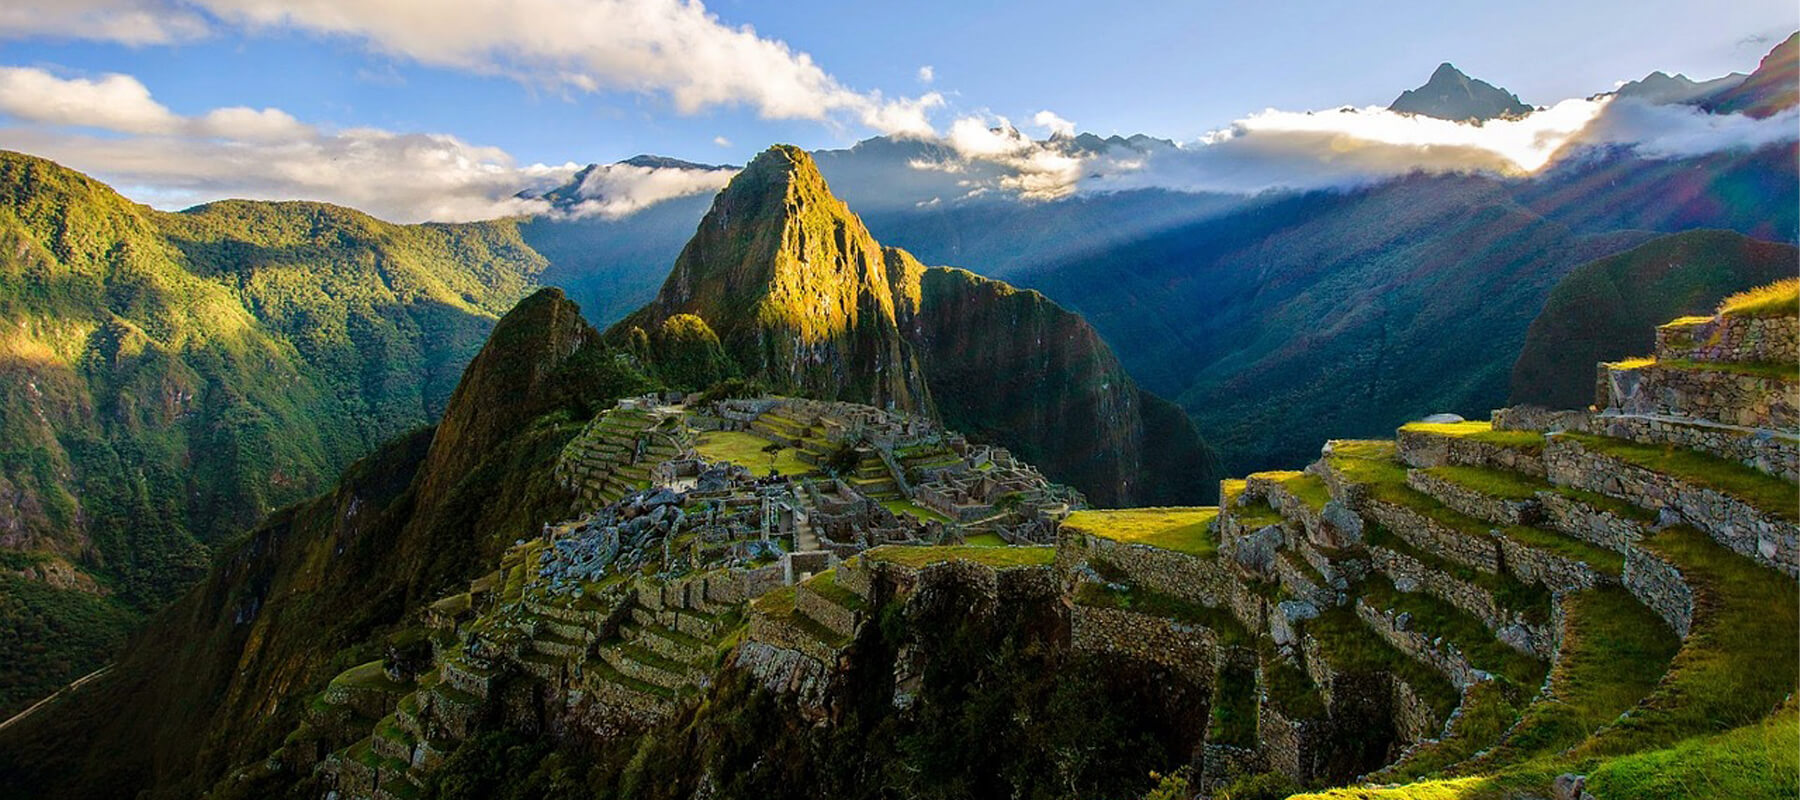 Visiter le Pérou vaut il le coup ?